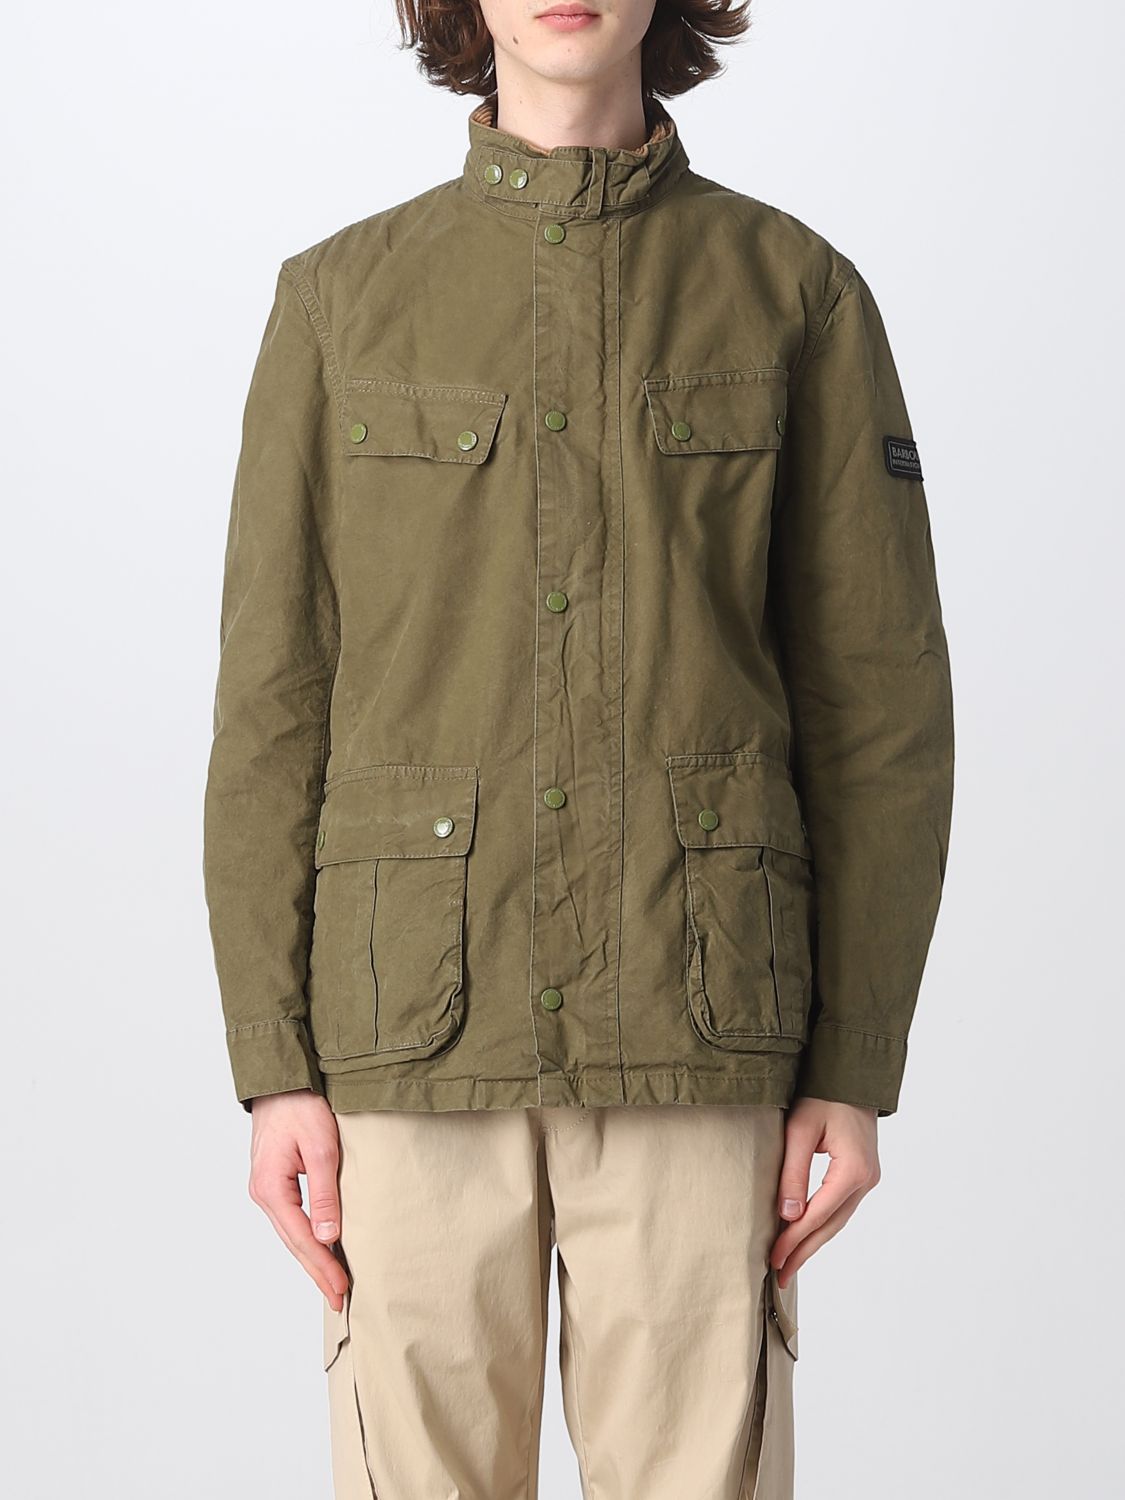 Wordt erger gijzelaar weerstand bieden BARBOUR: jacket for man - Military | Barbour jacket MCA0667 online on  GIGLIO.COM